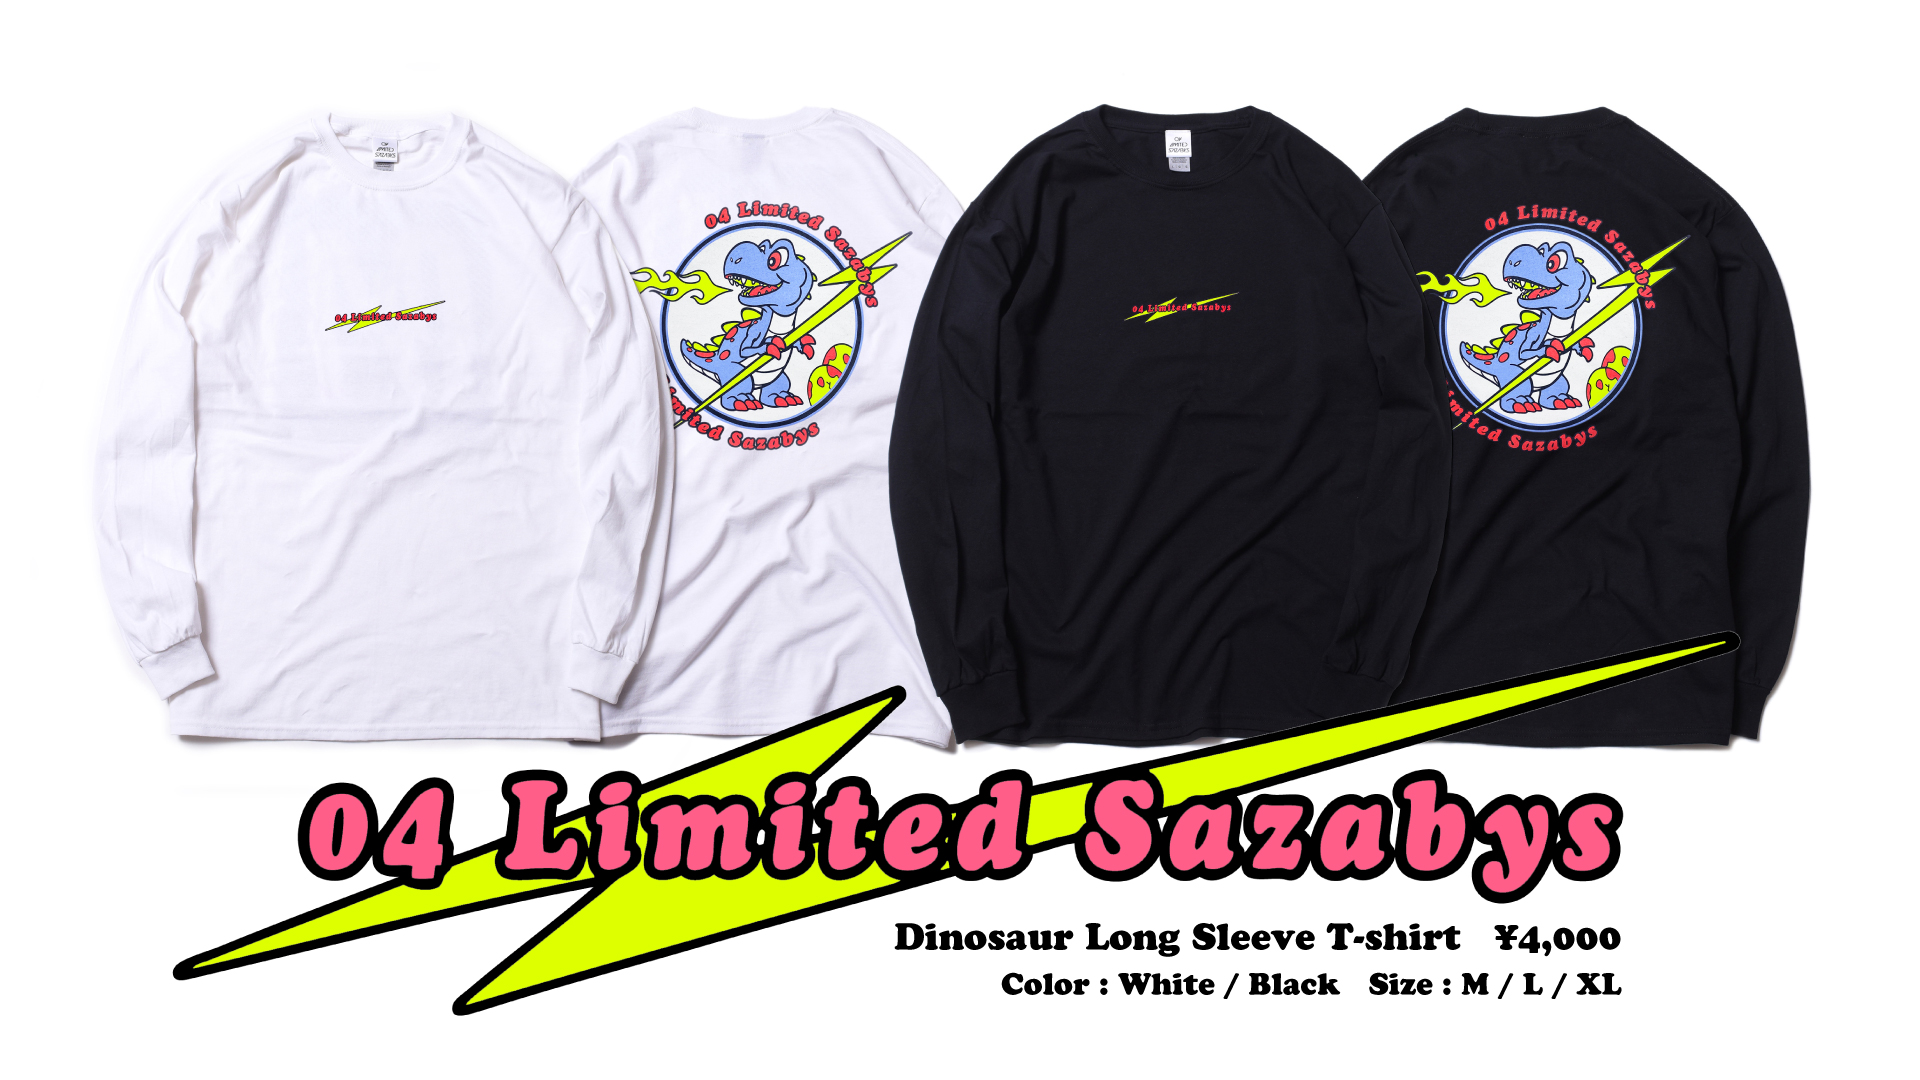 フォーリミ fire ロンT Tシャツ 04 Limited Sazabys 黒 | www